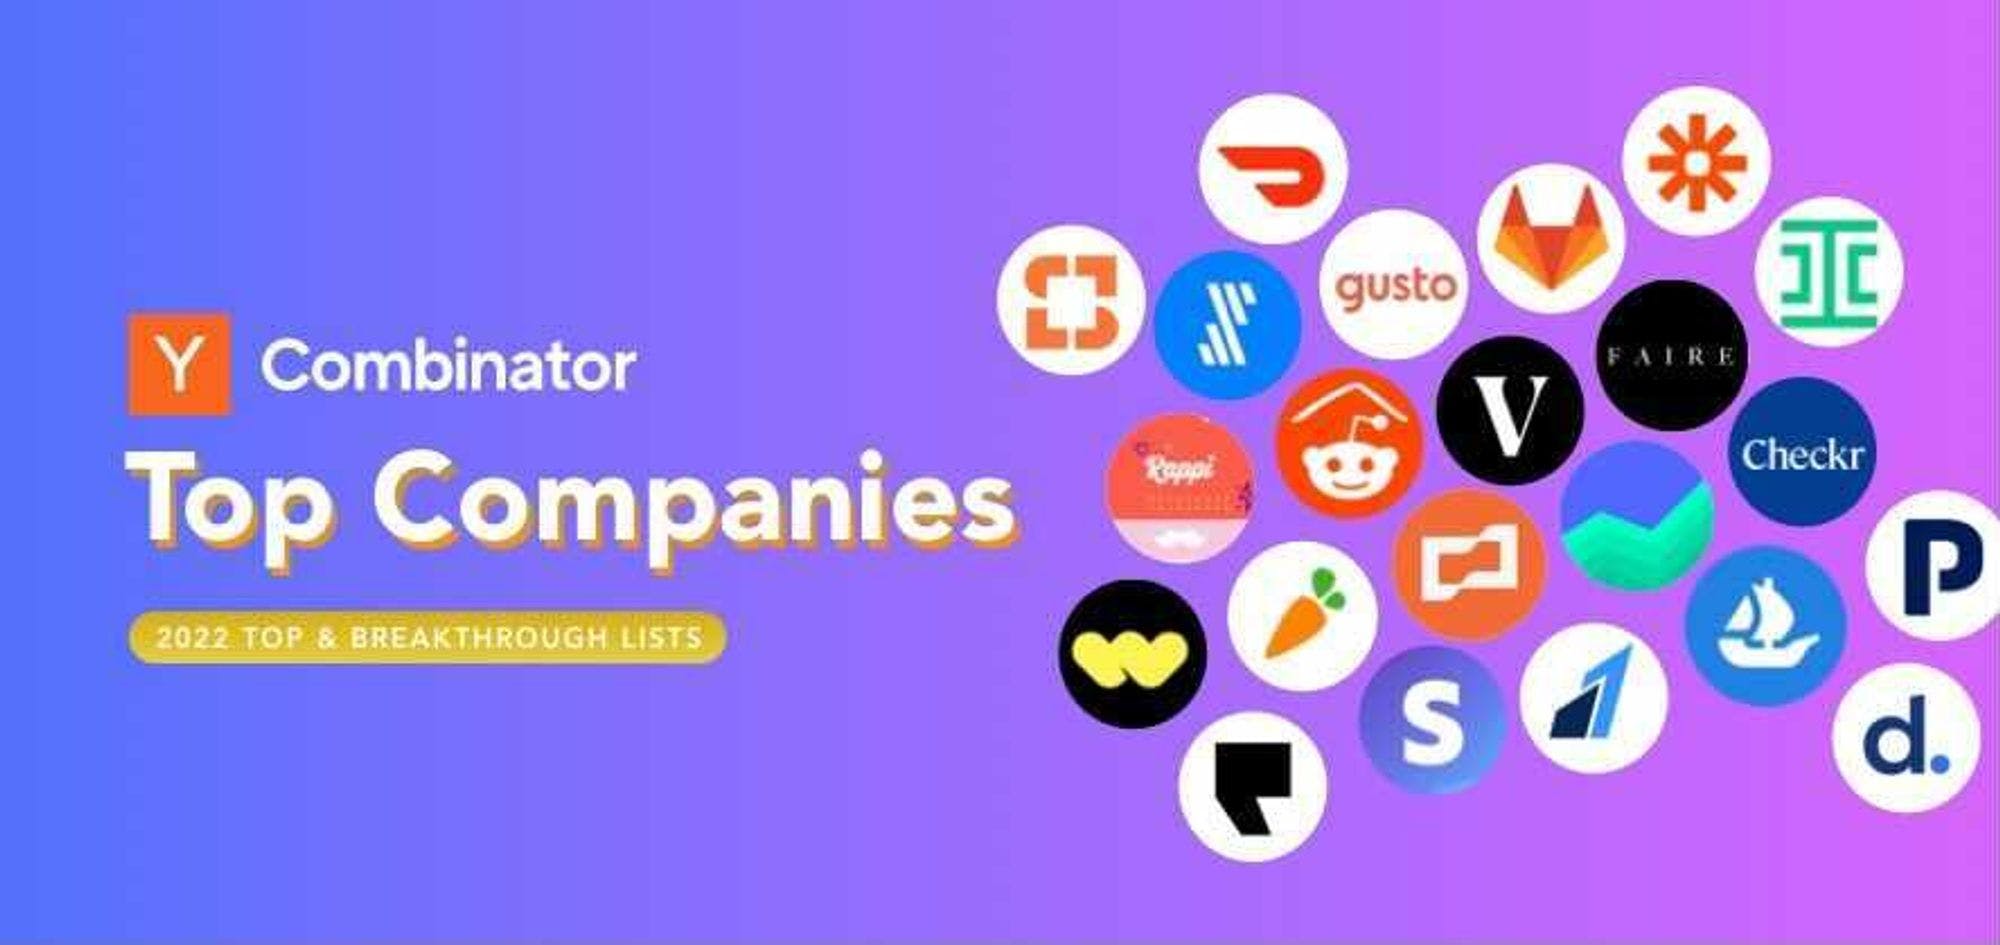 Y Combinator Top Companies List | Y Combinator